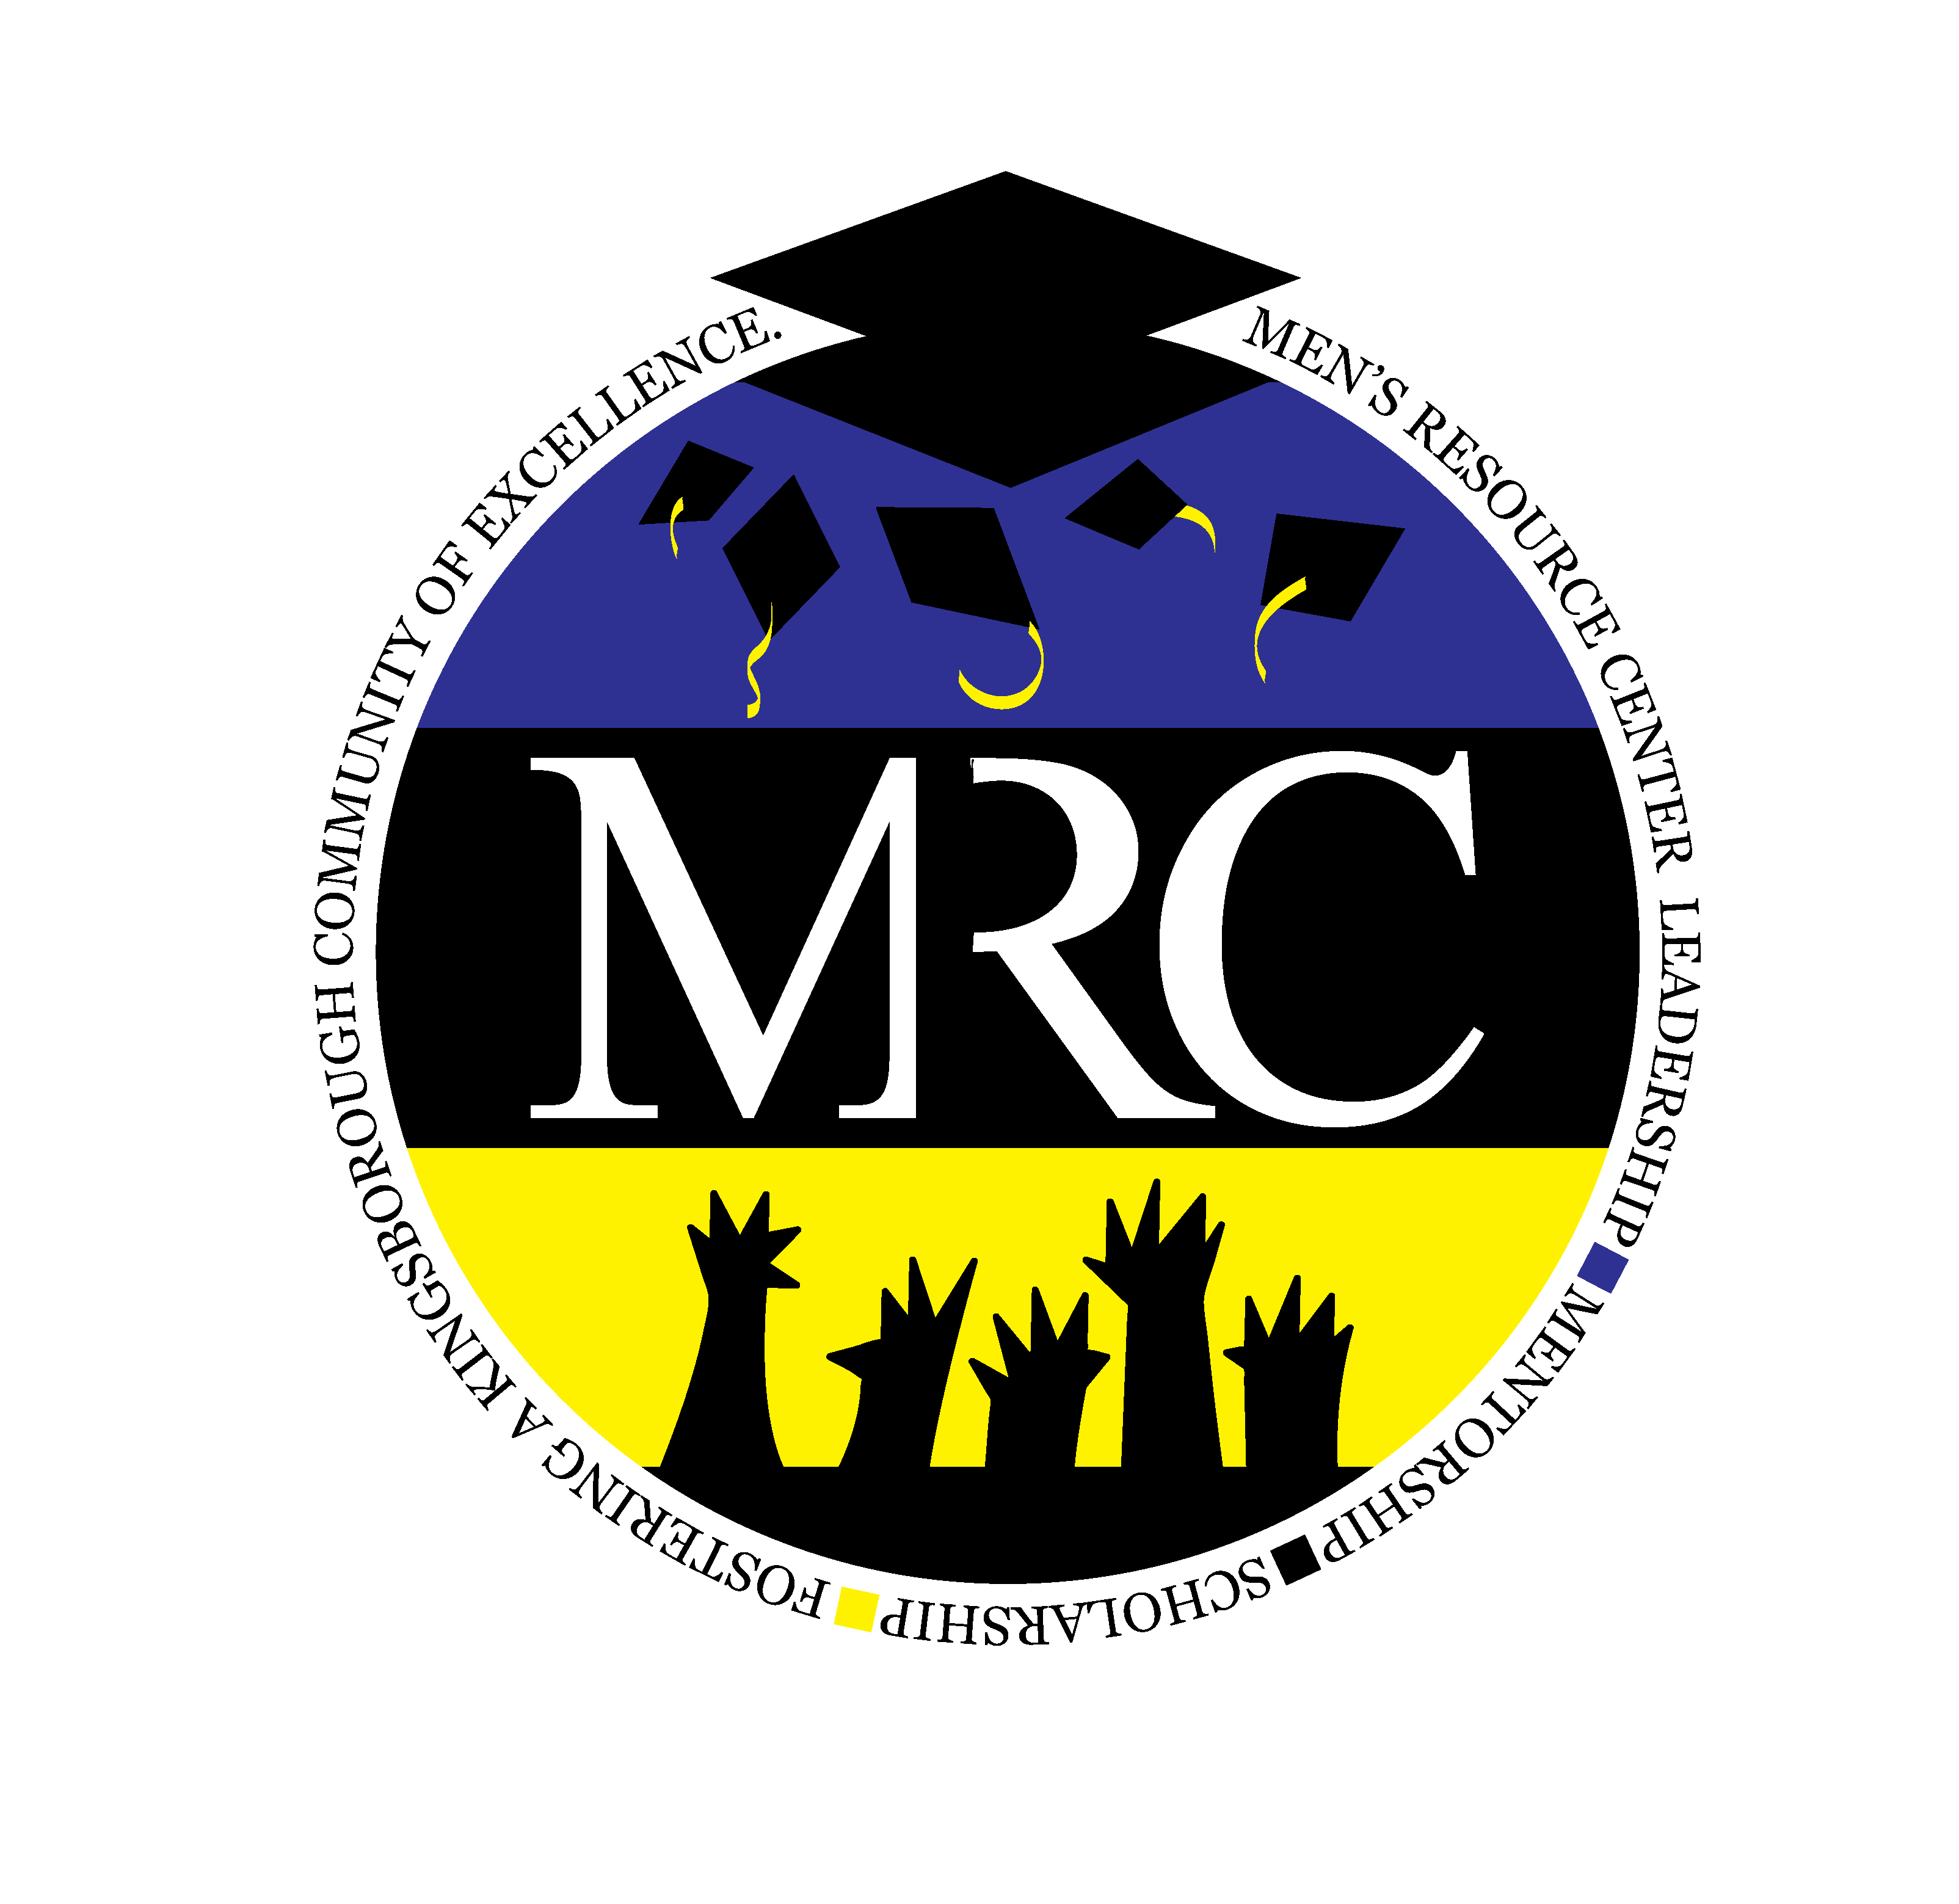 MRC logo